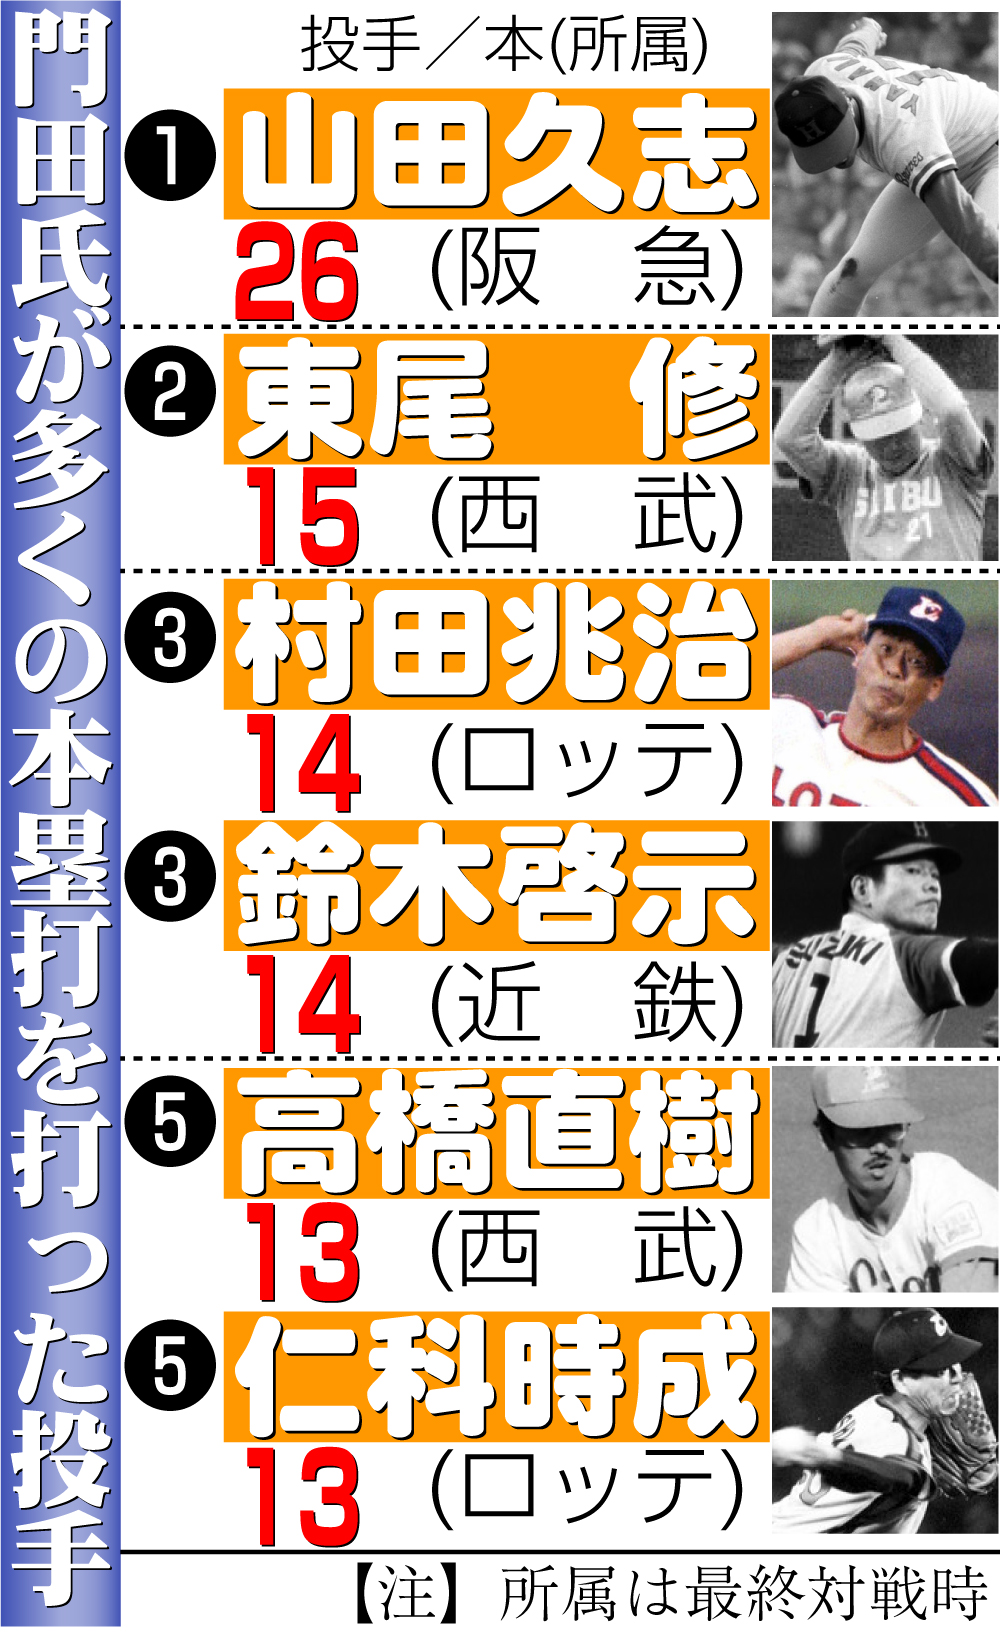 【イラスト】門田氏が多くの本塁打を打った投手